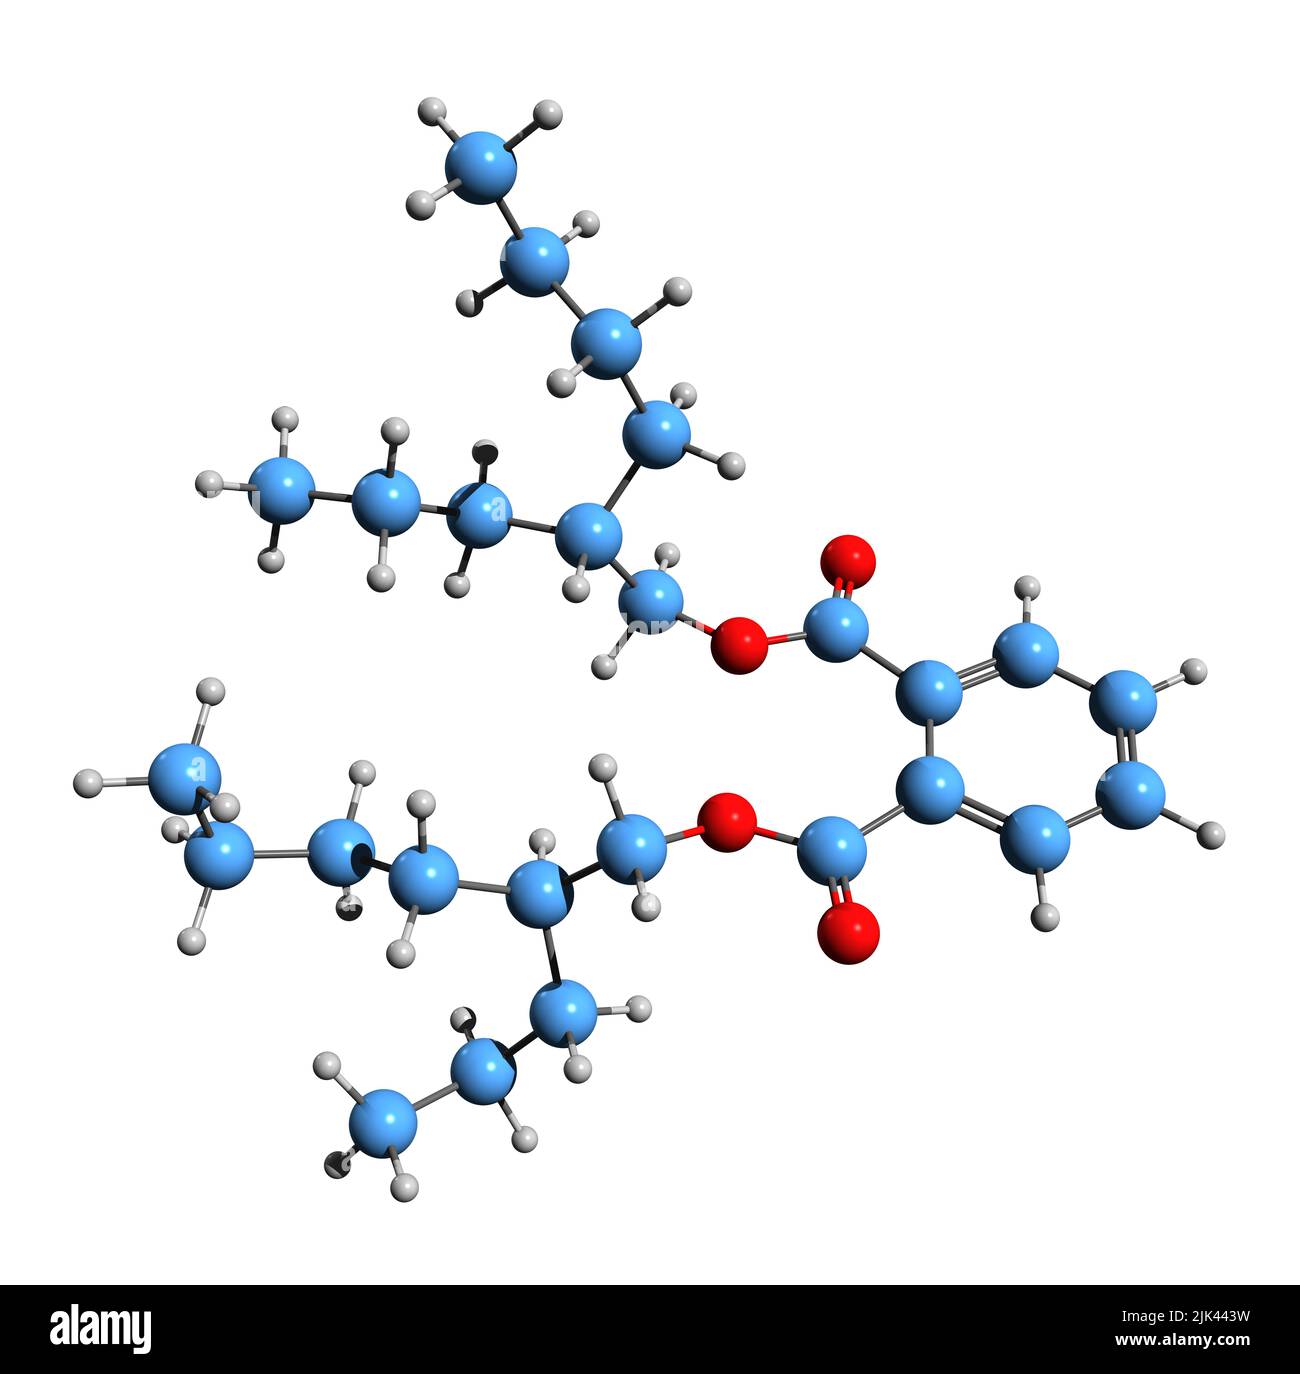 3D Bild der Skelettformel von Dioctyl Terephthalat - molekulare chemische Struktur von nicht-Phthalat-Weichmachern auf weißem Hintergrund isoliert Stockfoto